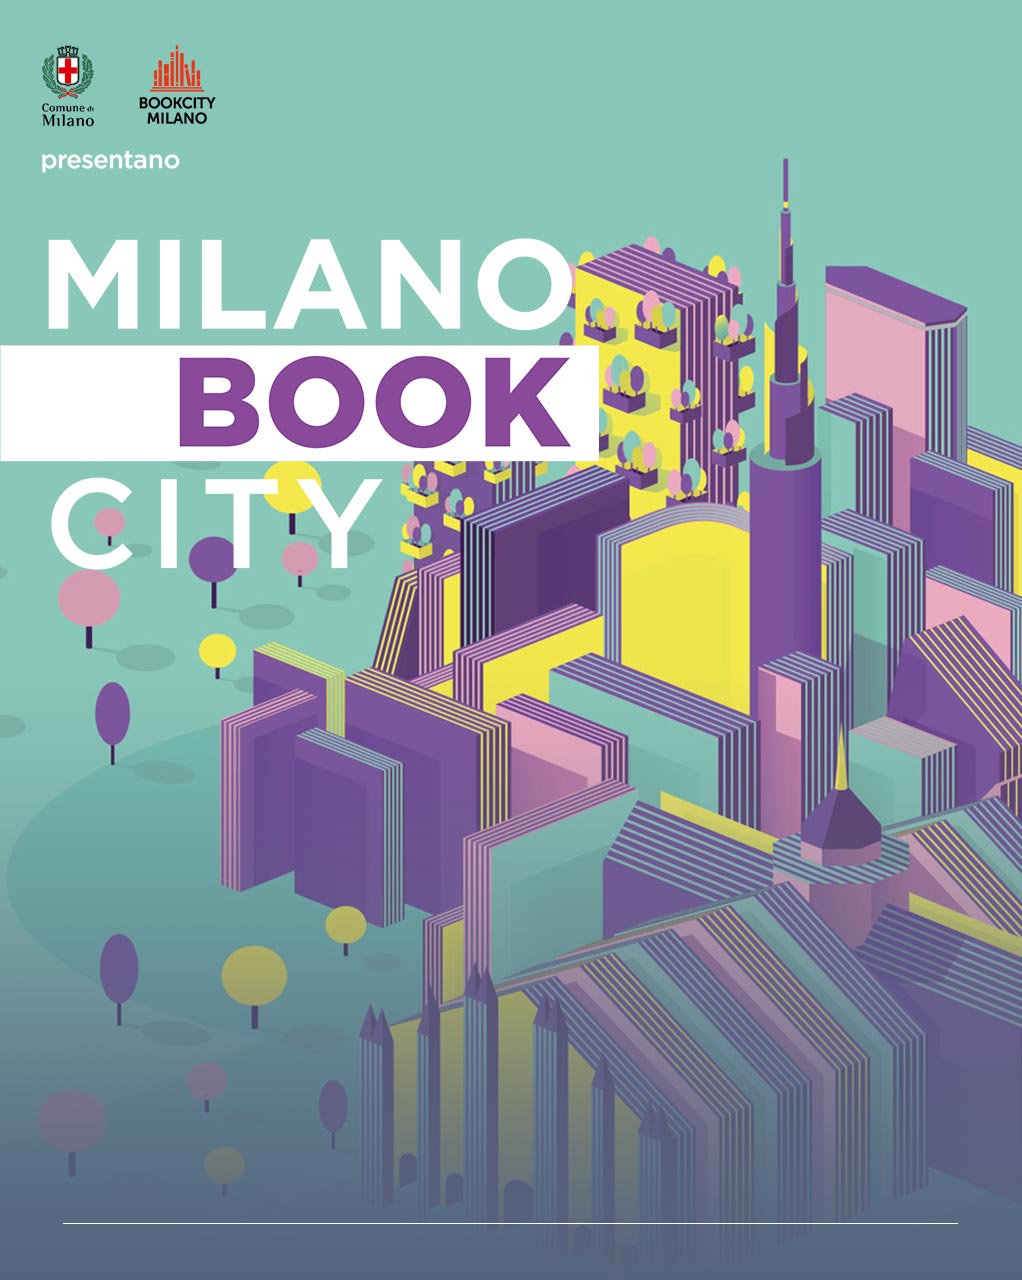 Immagine grafica raffigurante lo skyline di Milano 